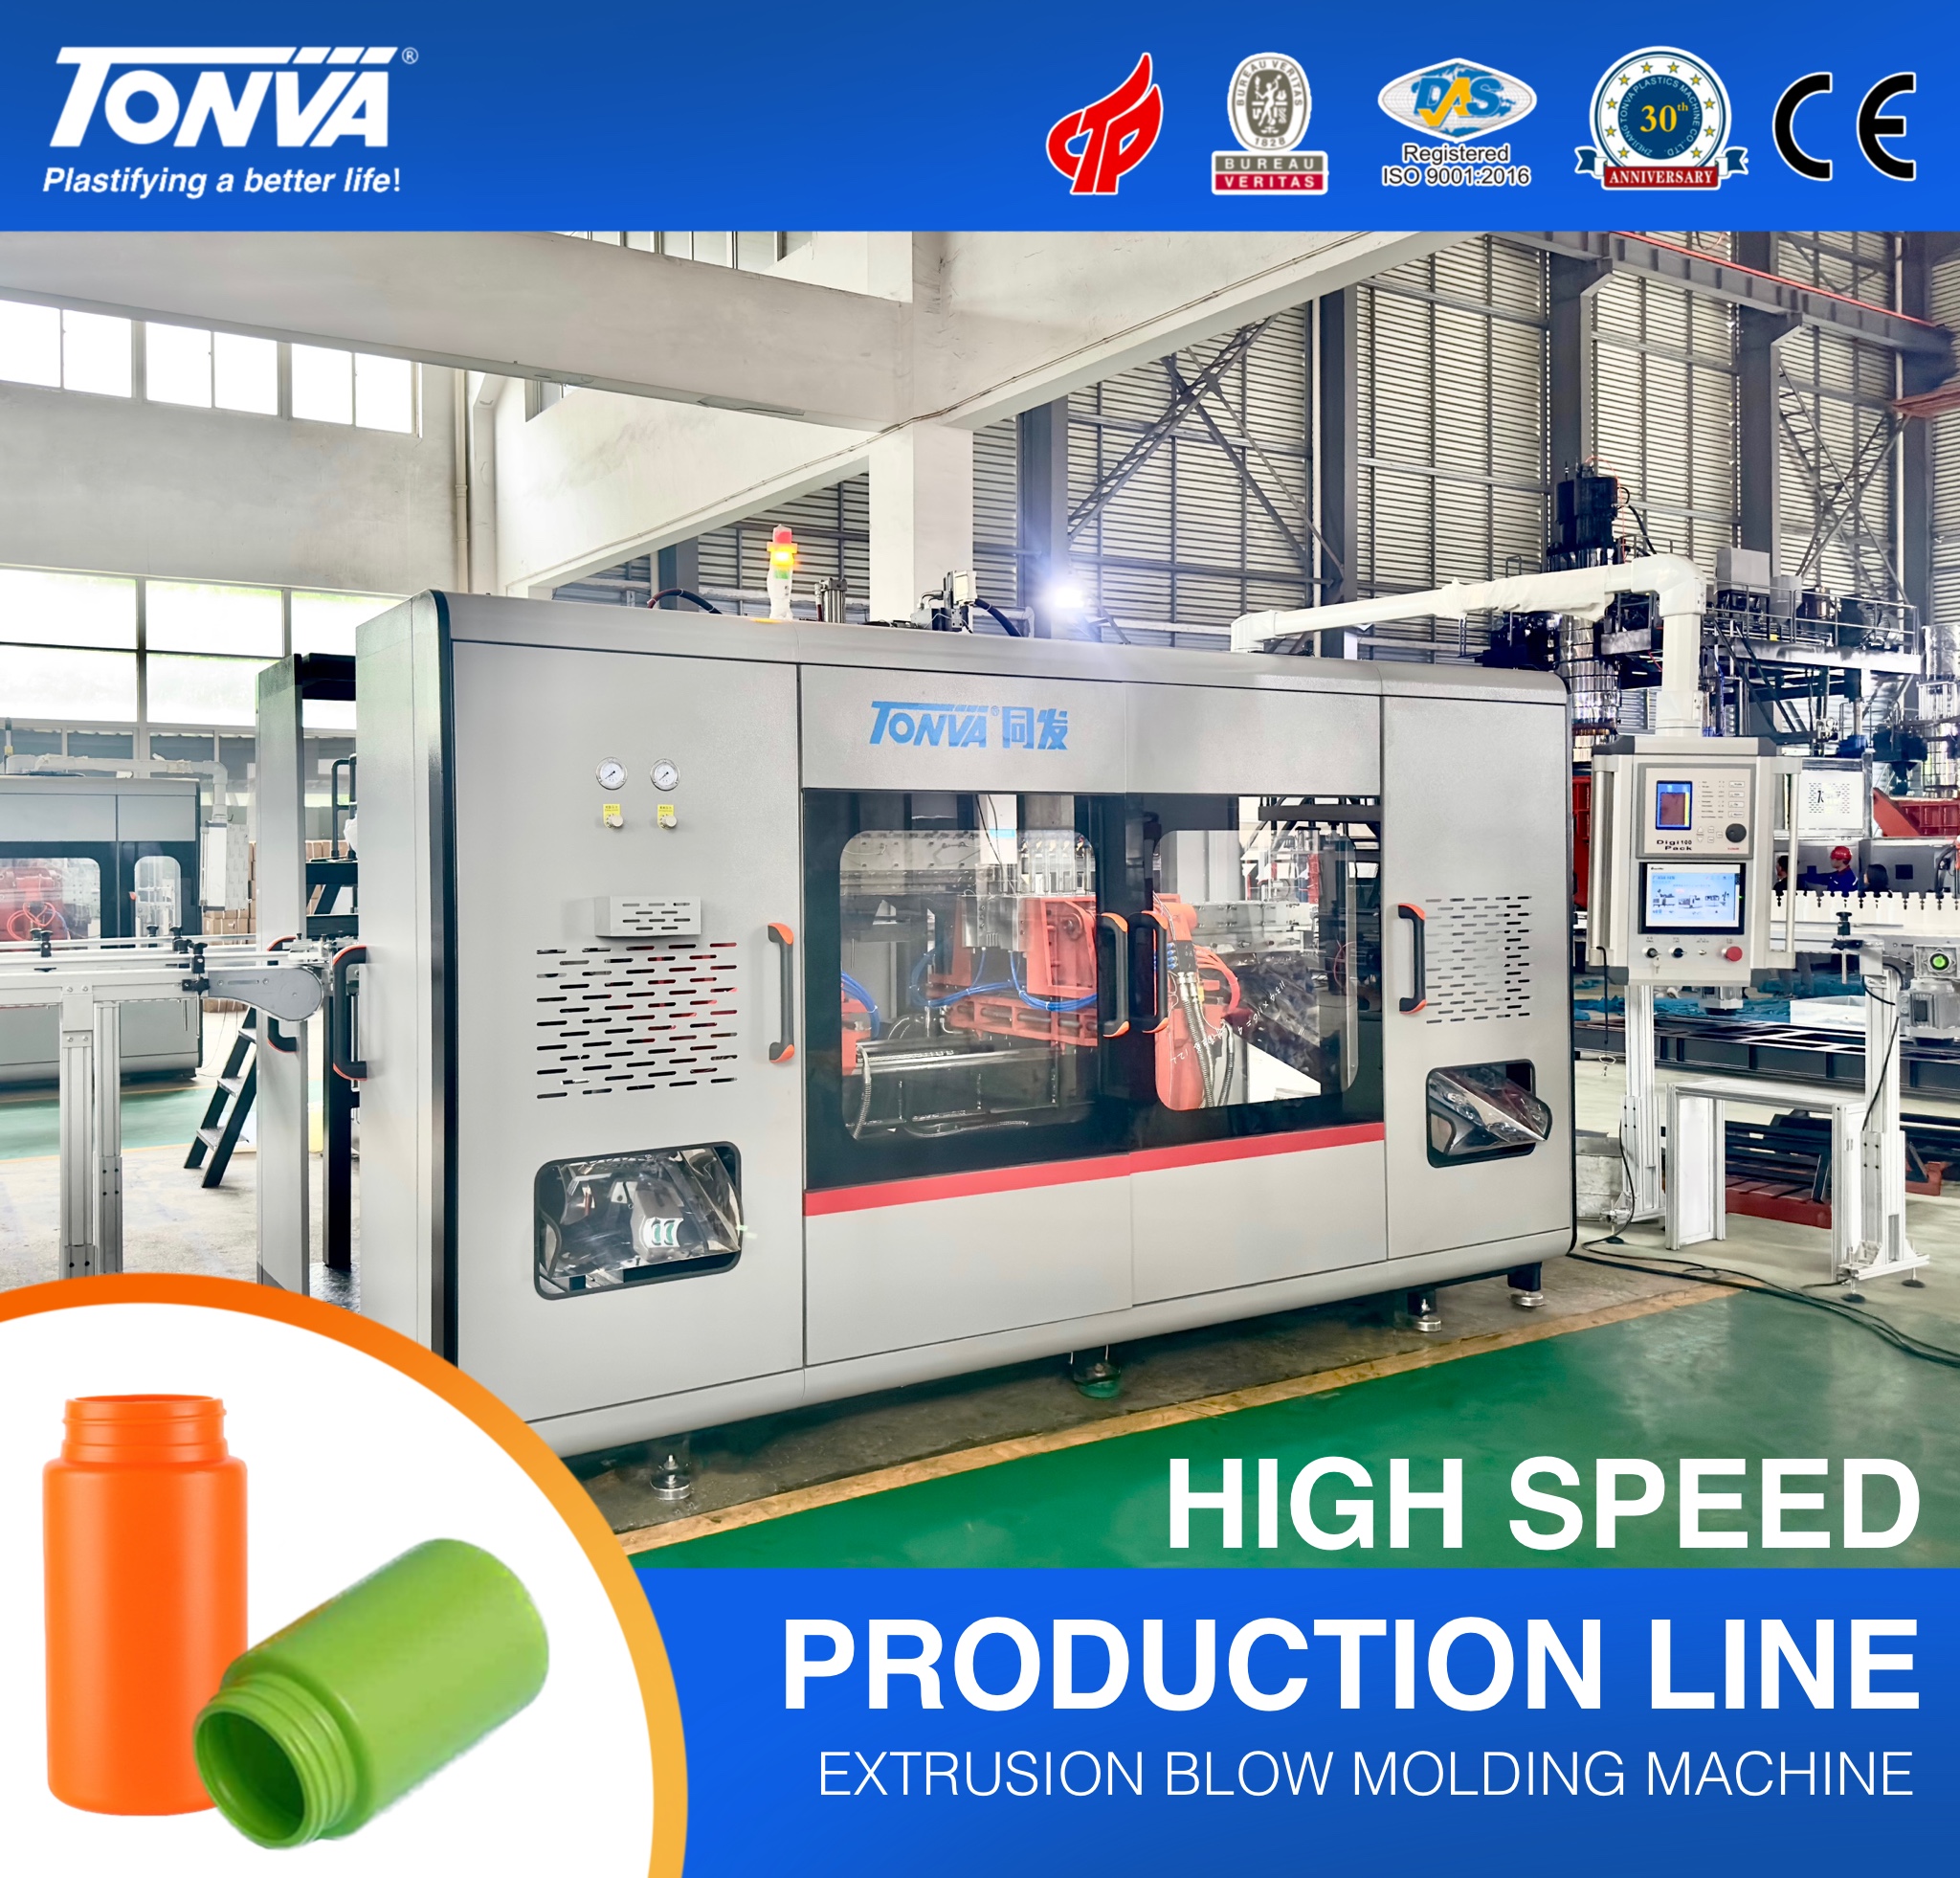 TONVA 10 holtes blaasvormmachine met hoge output voor de productielijn van plastic flessen Uitgelichte afbeelding